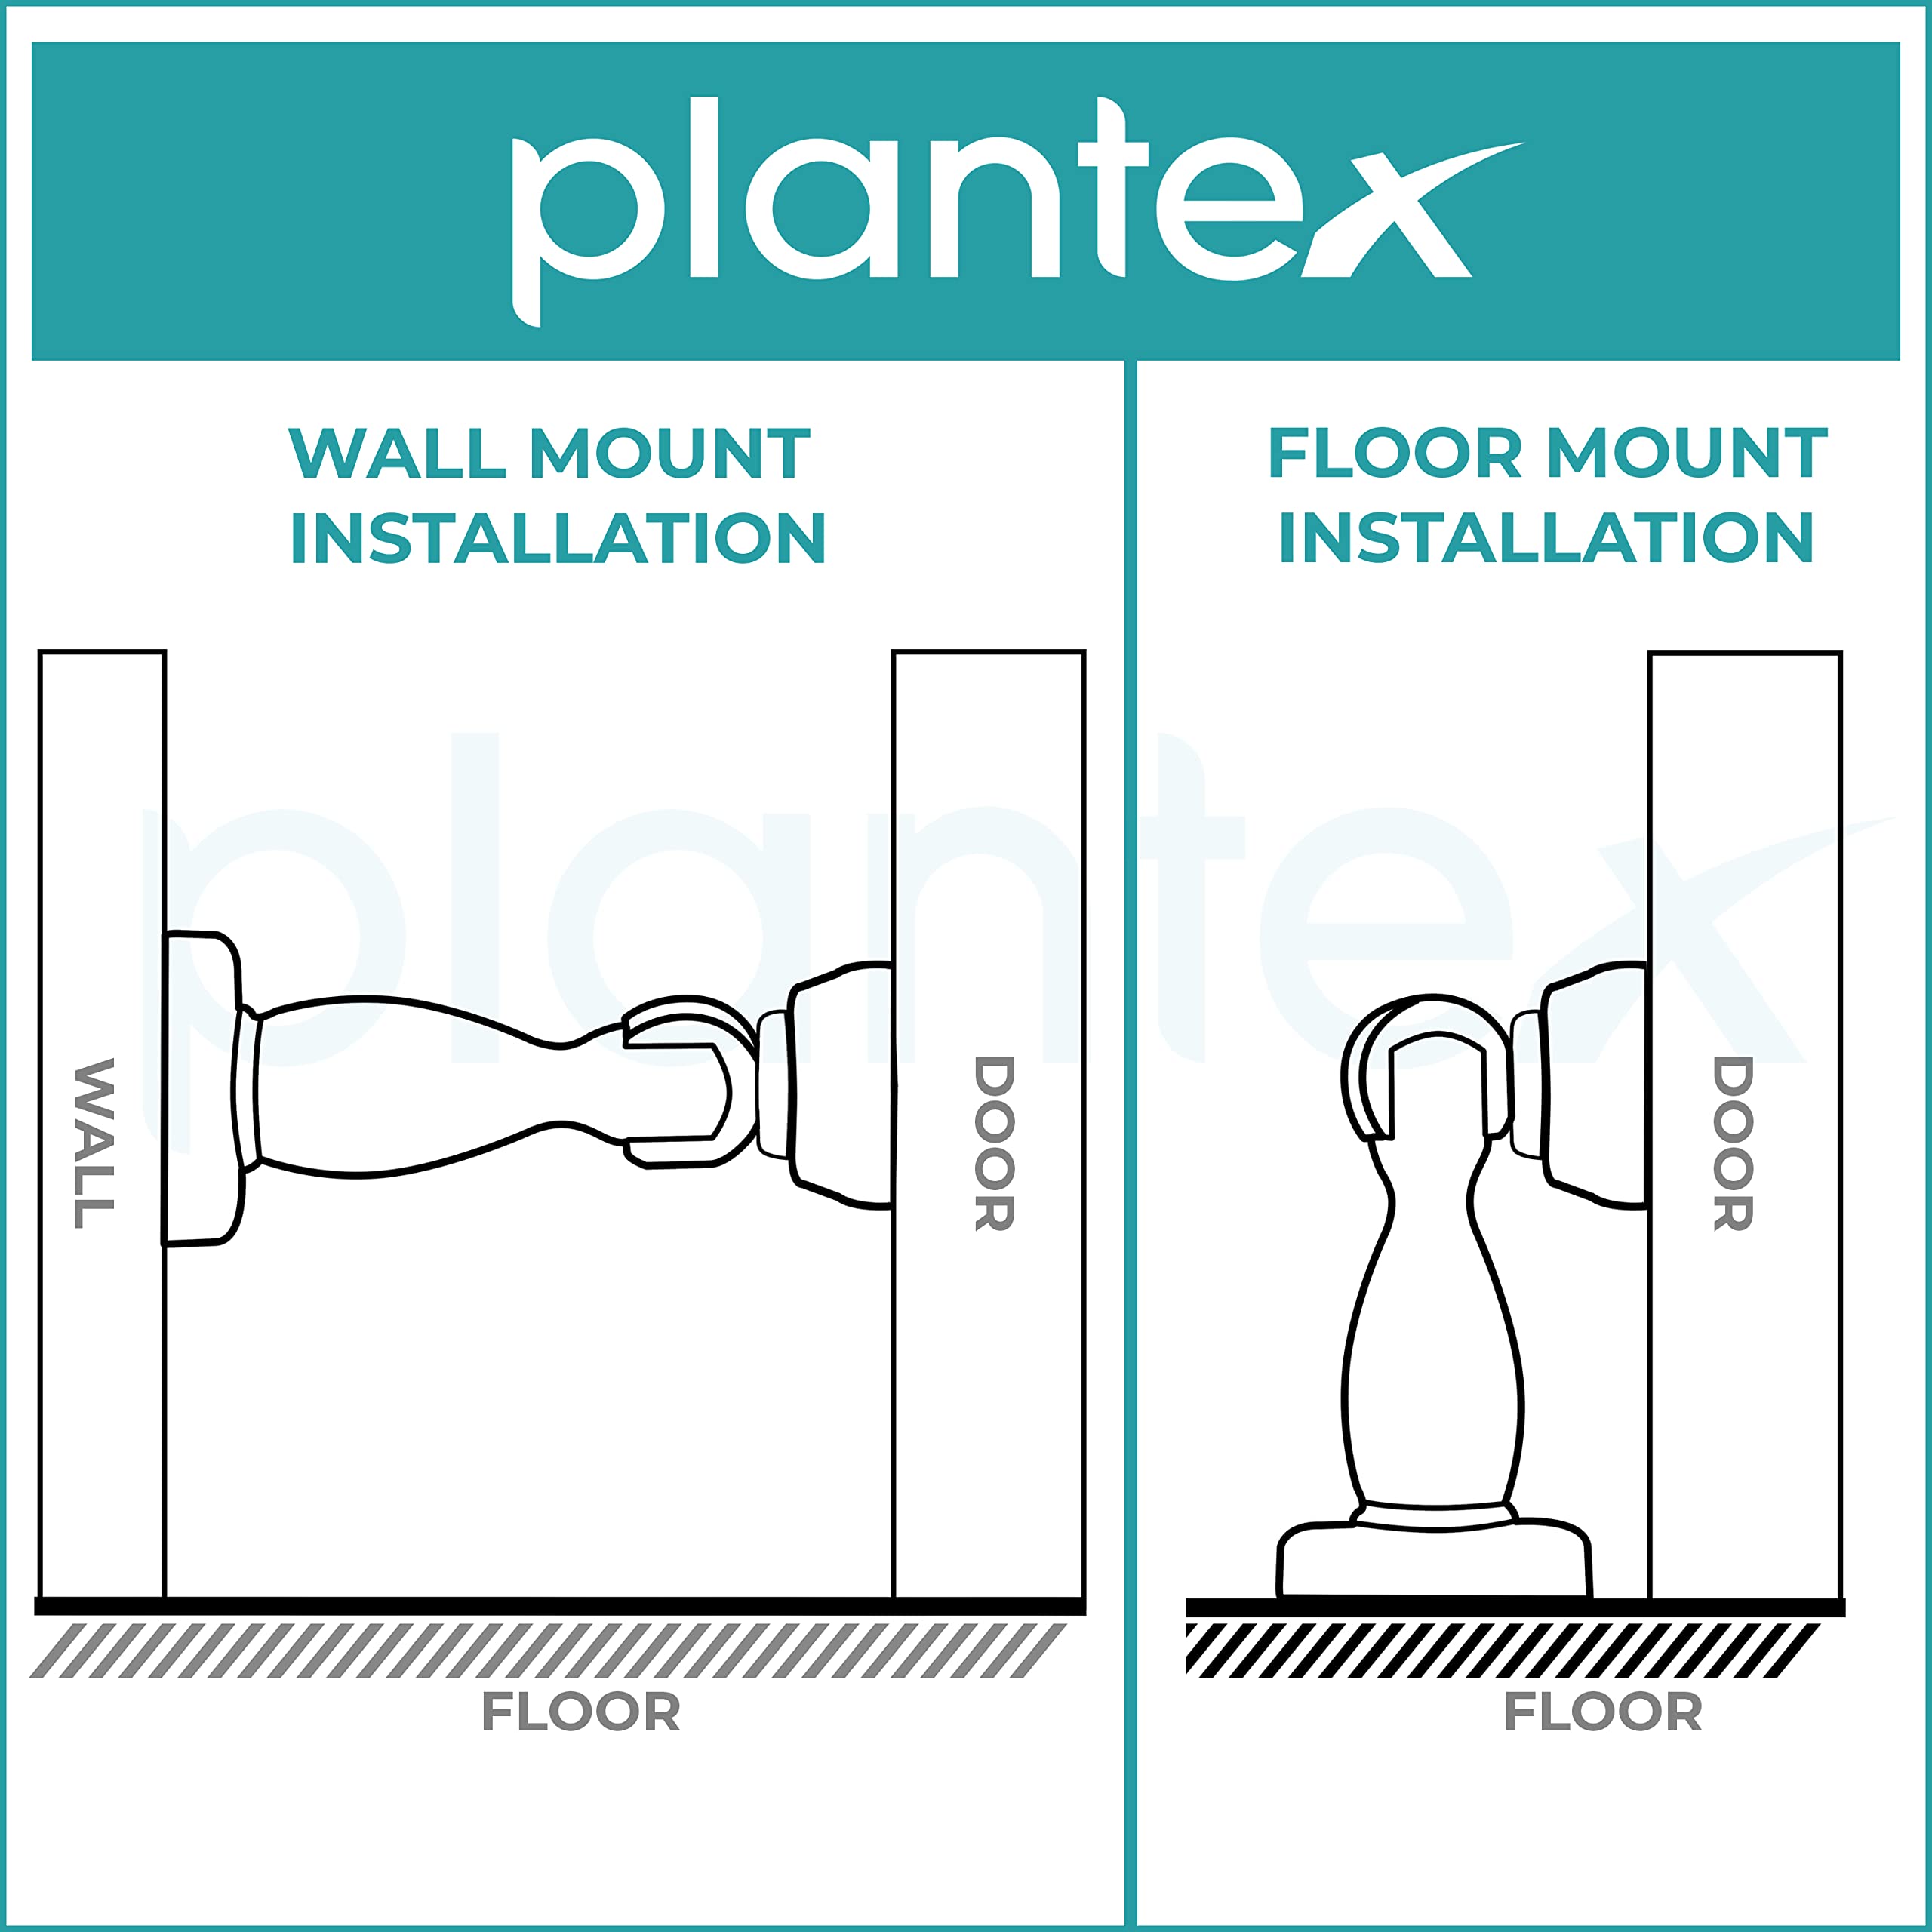 Plantex Magnetic Door Stopper for Home/ 360 Degree Magnet Door Catcher/Door Holder for Main Door/Bedroom/Office and Hotel Door - Pack of 3 (4 inch, Chrome)